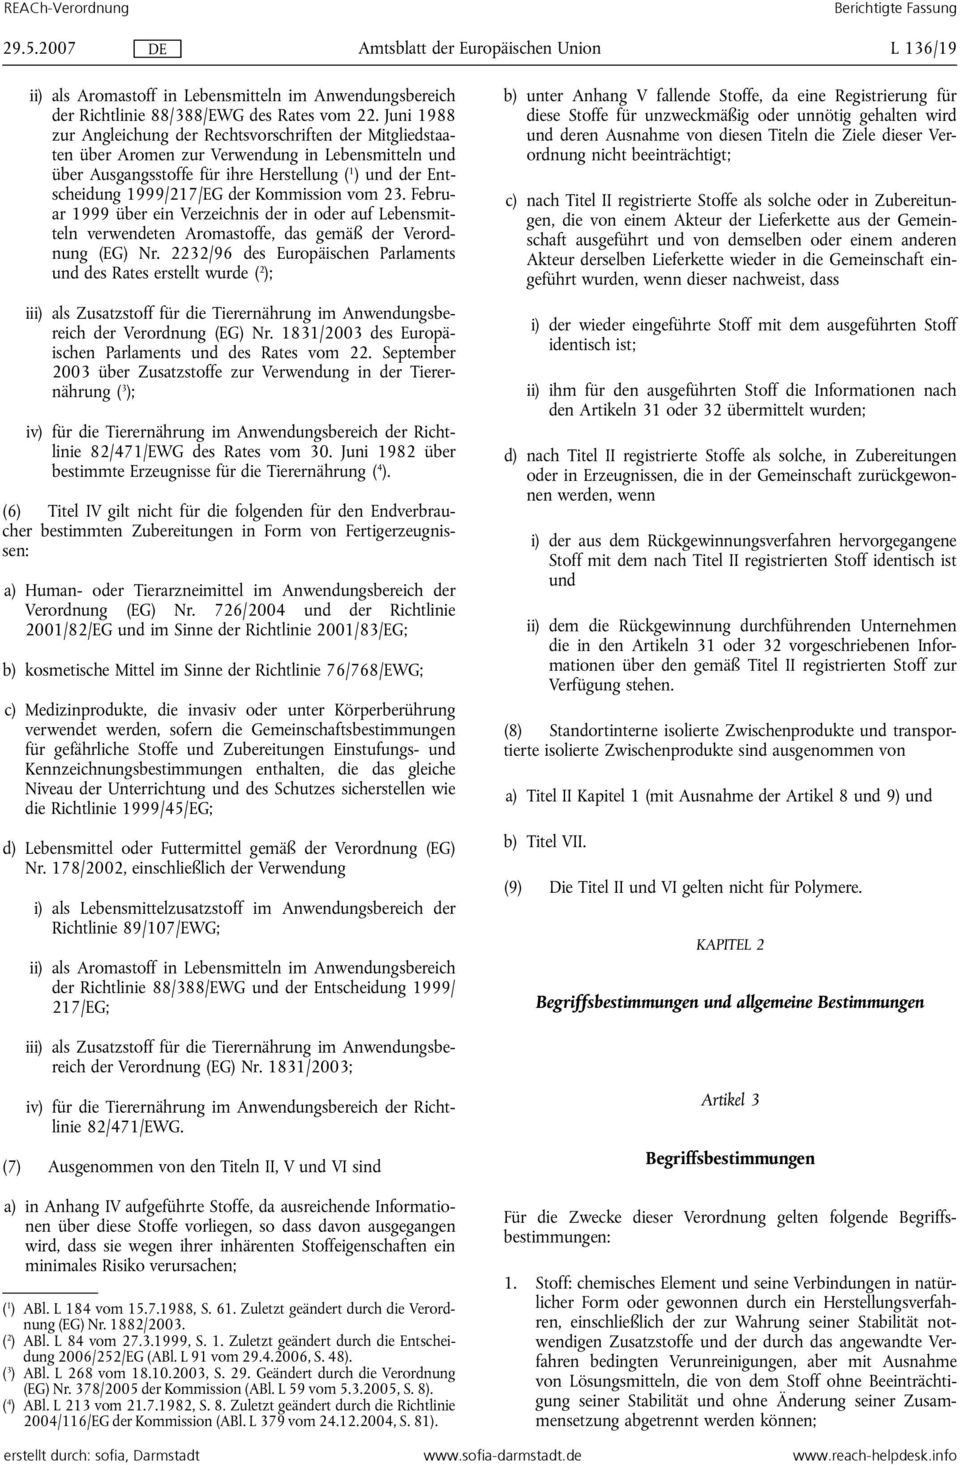 der Kommission vom 23. Februar 1999 über ein Verzeichnis der in oder auf Lebensmitteln verwendeten Aromastoffe, das gemäß der Verordnung (EG) Nr.